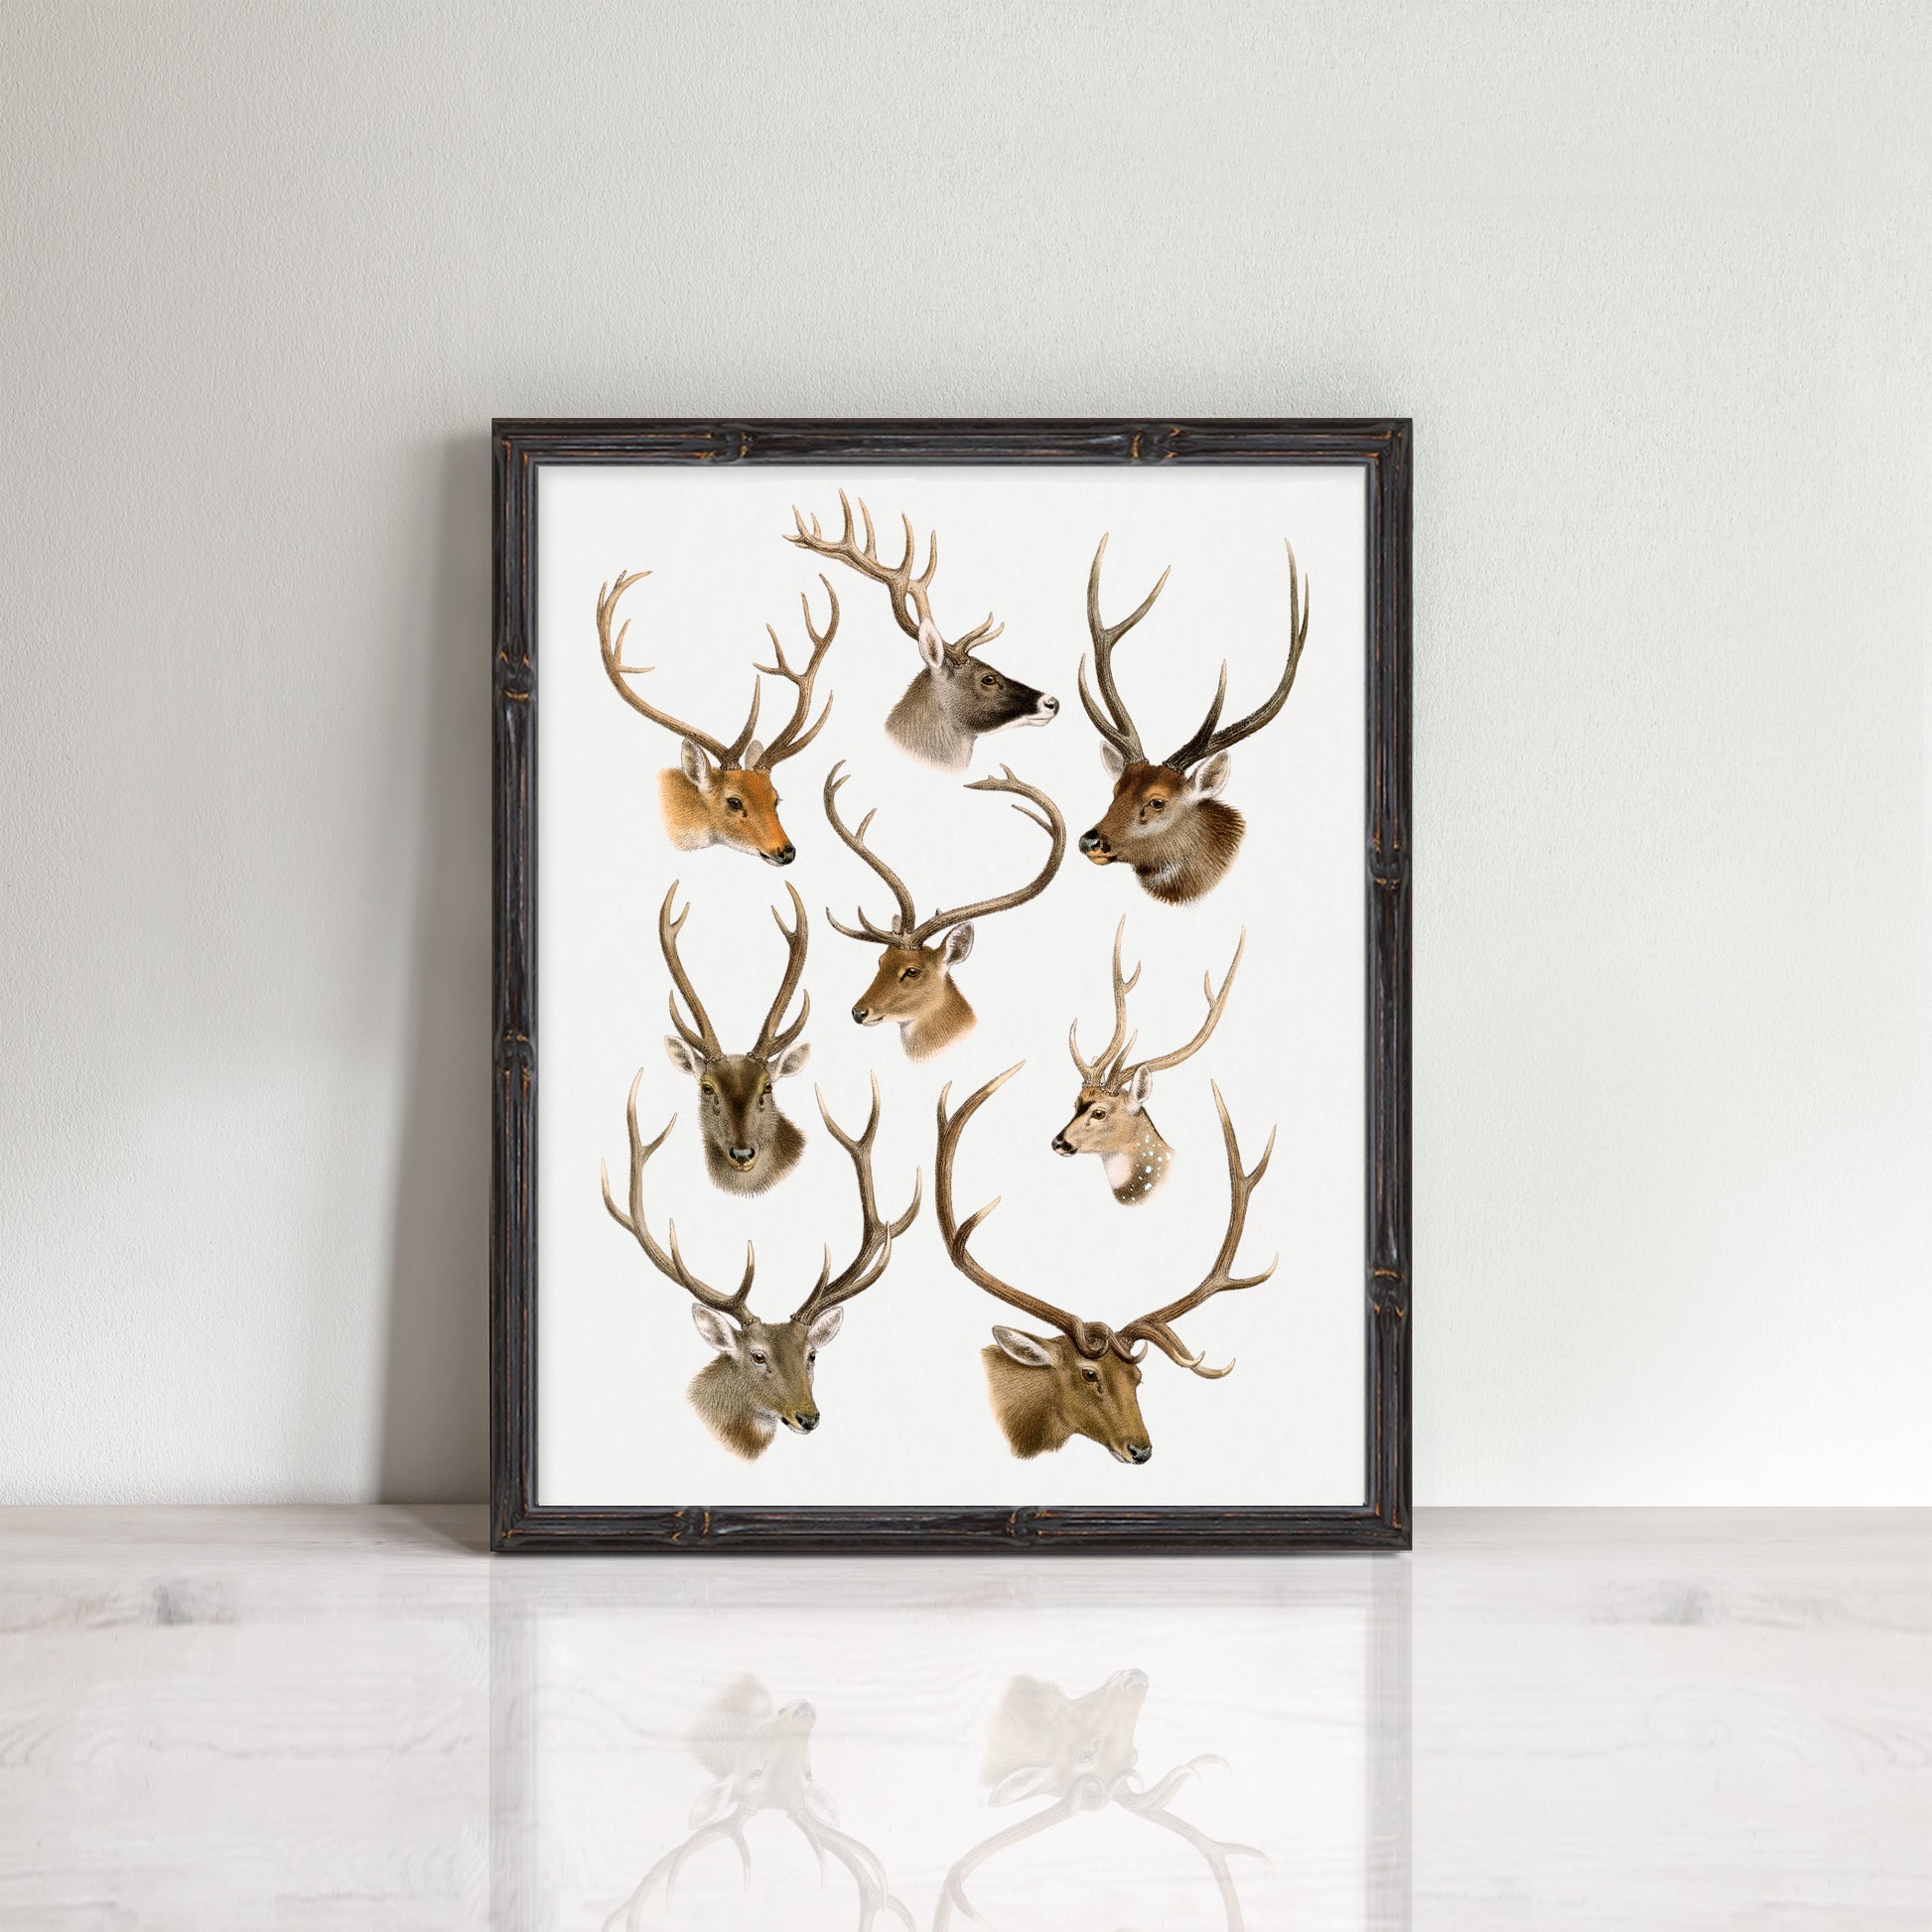 vintage deer head illustrations in a frame